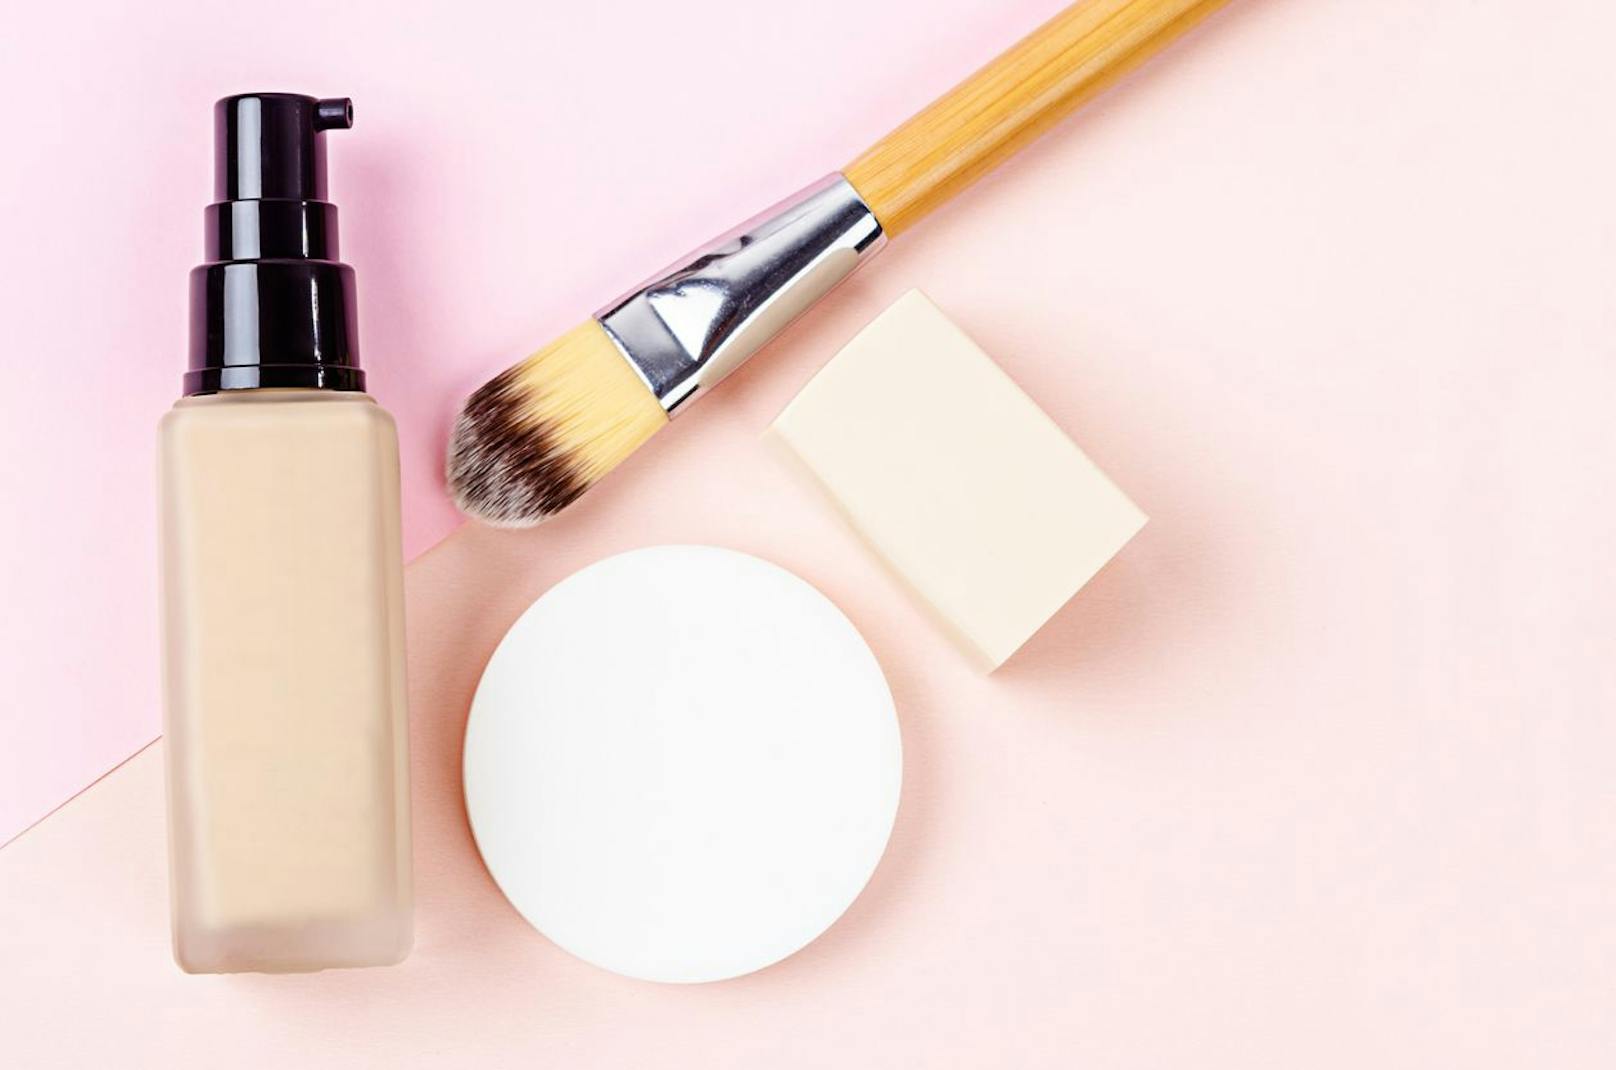 Verwende am besten einen feuchten Schwamm oder Pinsel, um dein Make-Up gleichmäßig in die Haut einzuarbeiten. 